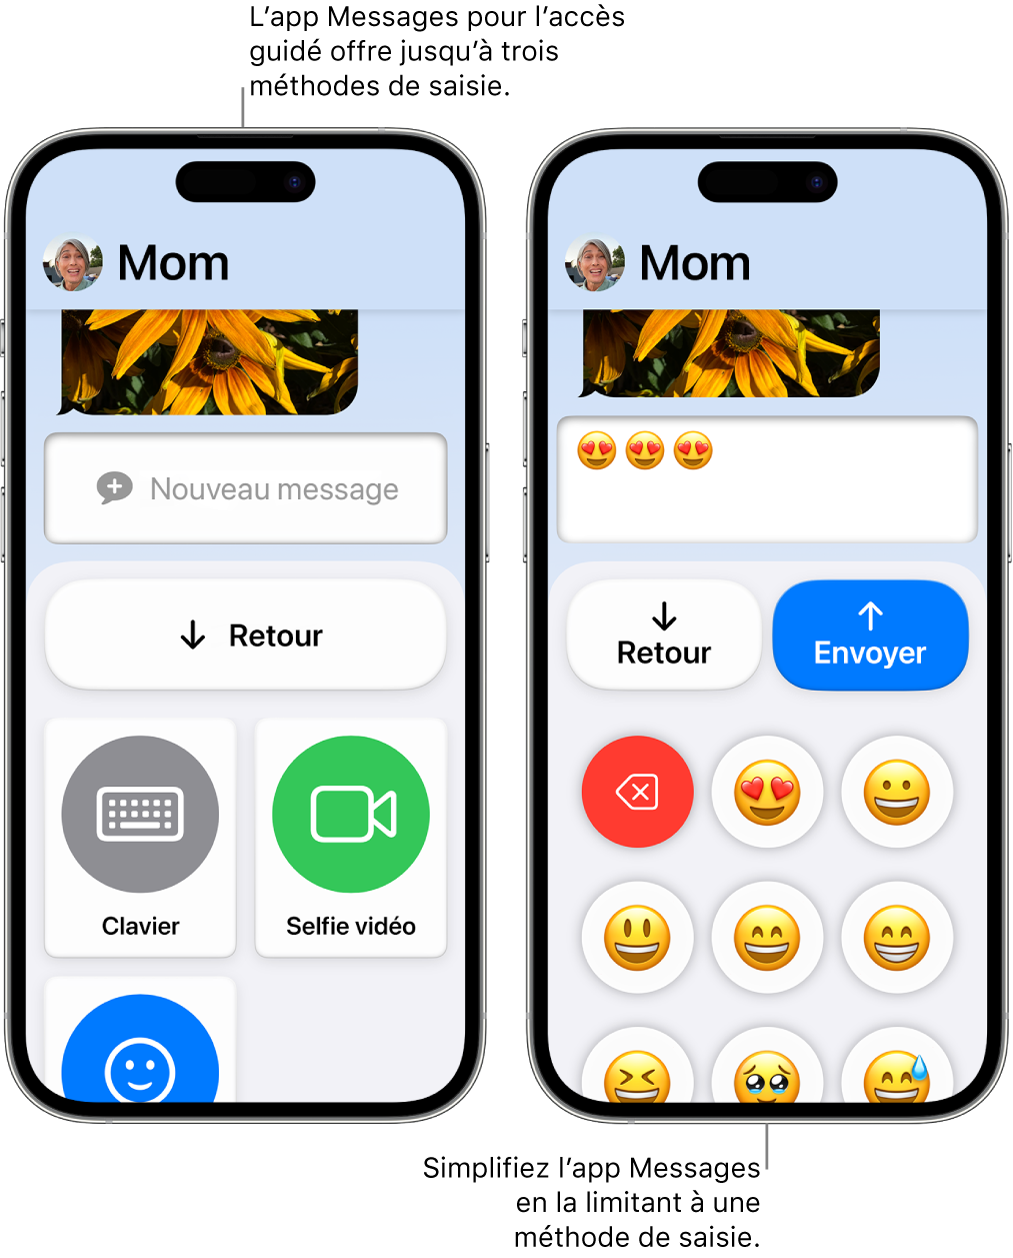 Deux iPhone dans Accès d’aide. Un iPhone affiche l’app Messages avec des méthodes de saisie proposées à l’utilisateur, comme Clavier et « Selfie vidéo ». L’autre affiche un message en cours d’envoi à l’aide d’un clavier composé uniquement d’Emoji.